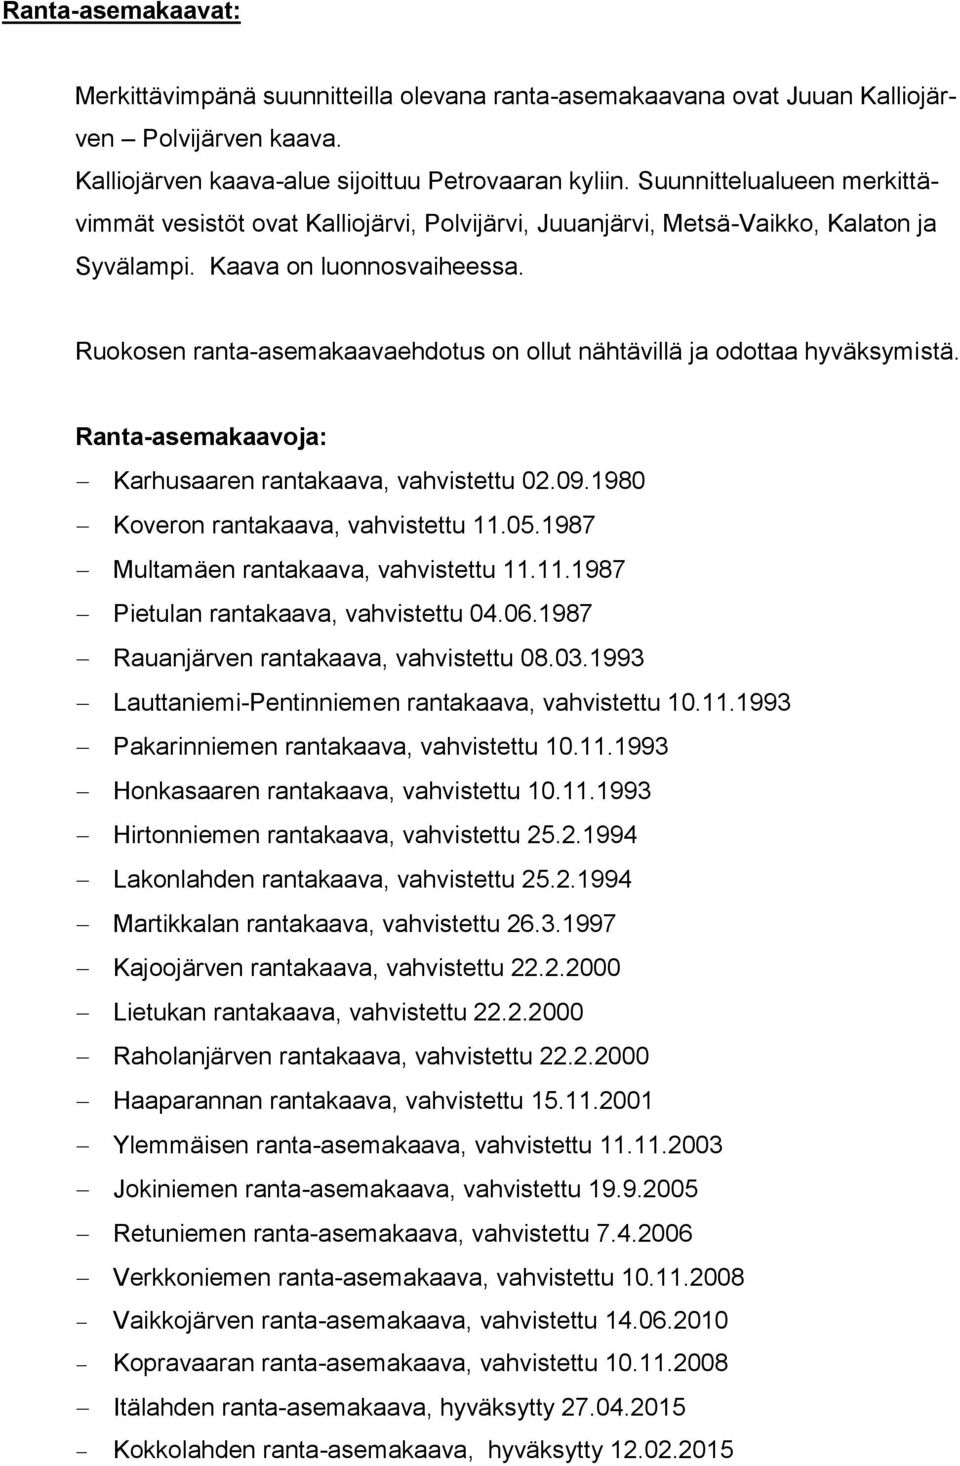 Ruokosen ranta-asemakaavaehdotus on ollut nähtävillä ja odottaa hyväksymistä. Ranta-asemakaavoja: Karhusaaren rantakaava, vahvistettu 02.09.1980 Koveron rantakaava, vahvistettu 11.05.